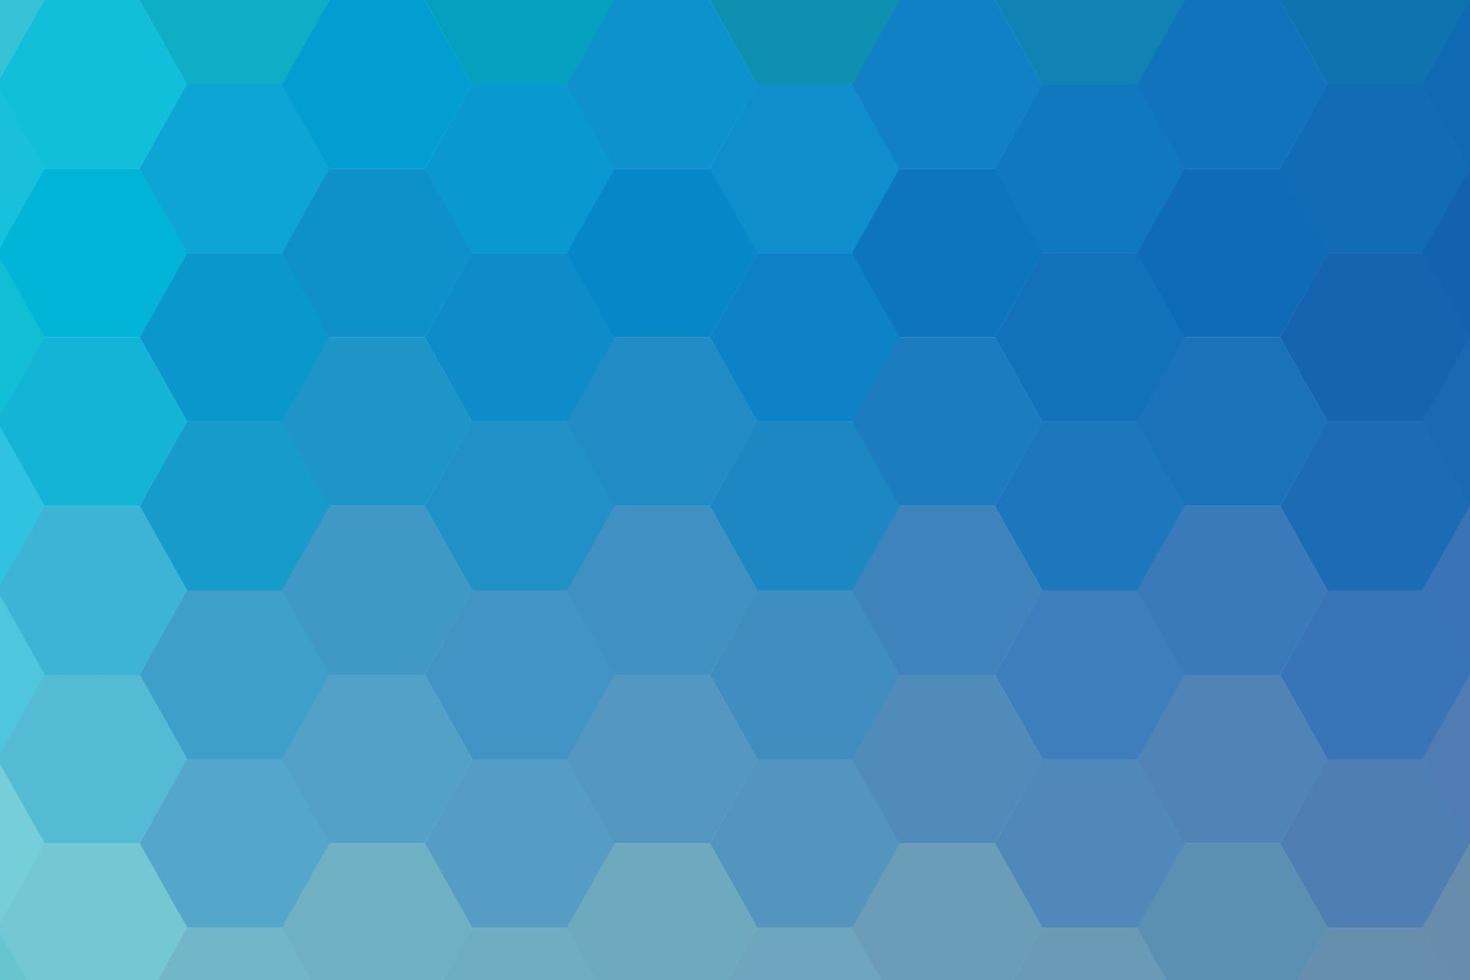 achtergrond van blauw gekleurde zeshoeken, helling achtergrond vector